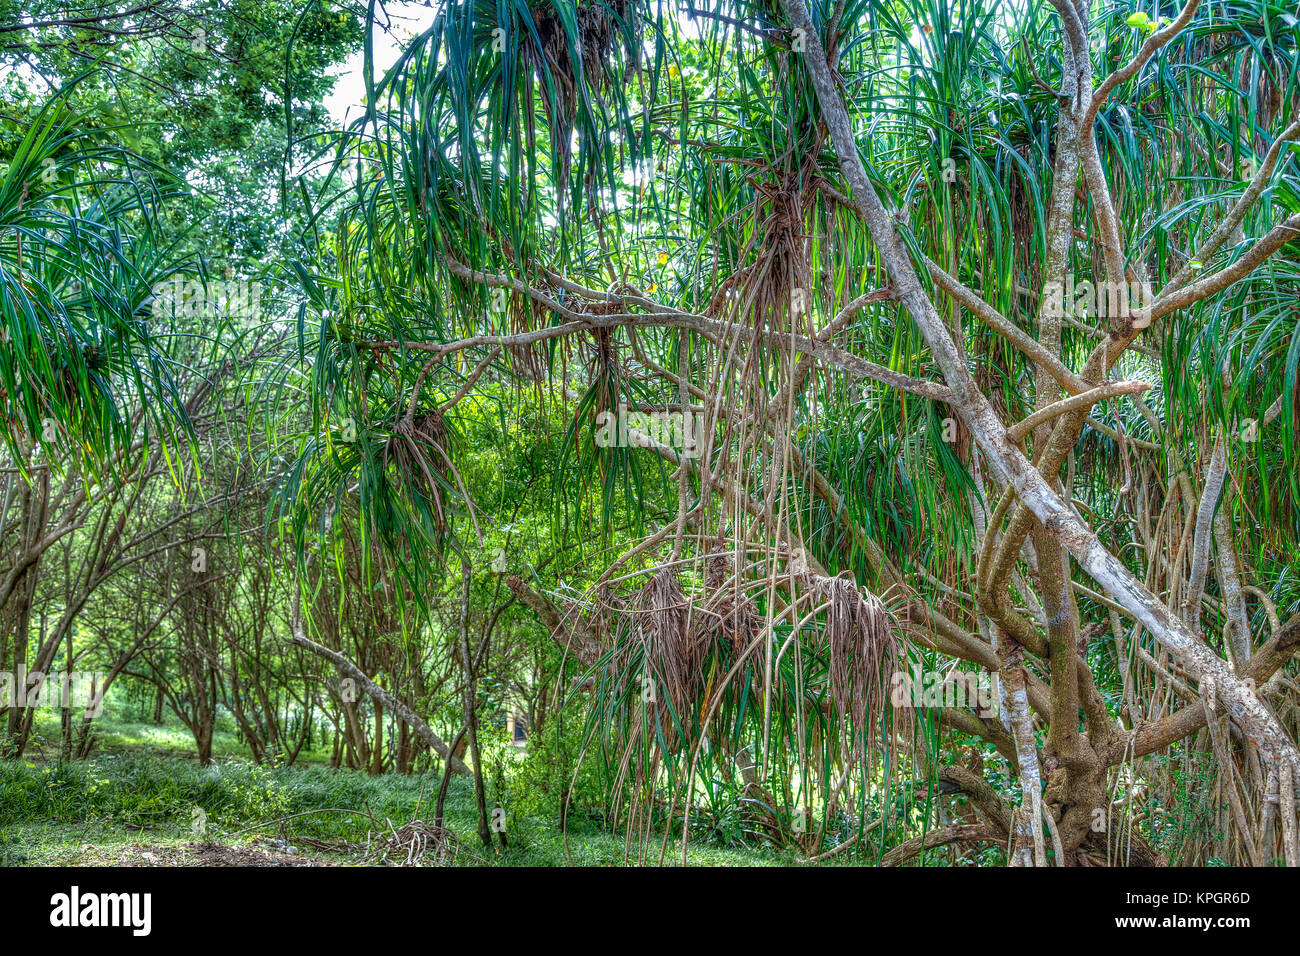 Ein Mangrovenwald im Süden Sri Lankas, einer Insel im Indischen Ozean Stock Photo